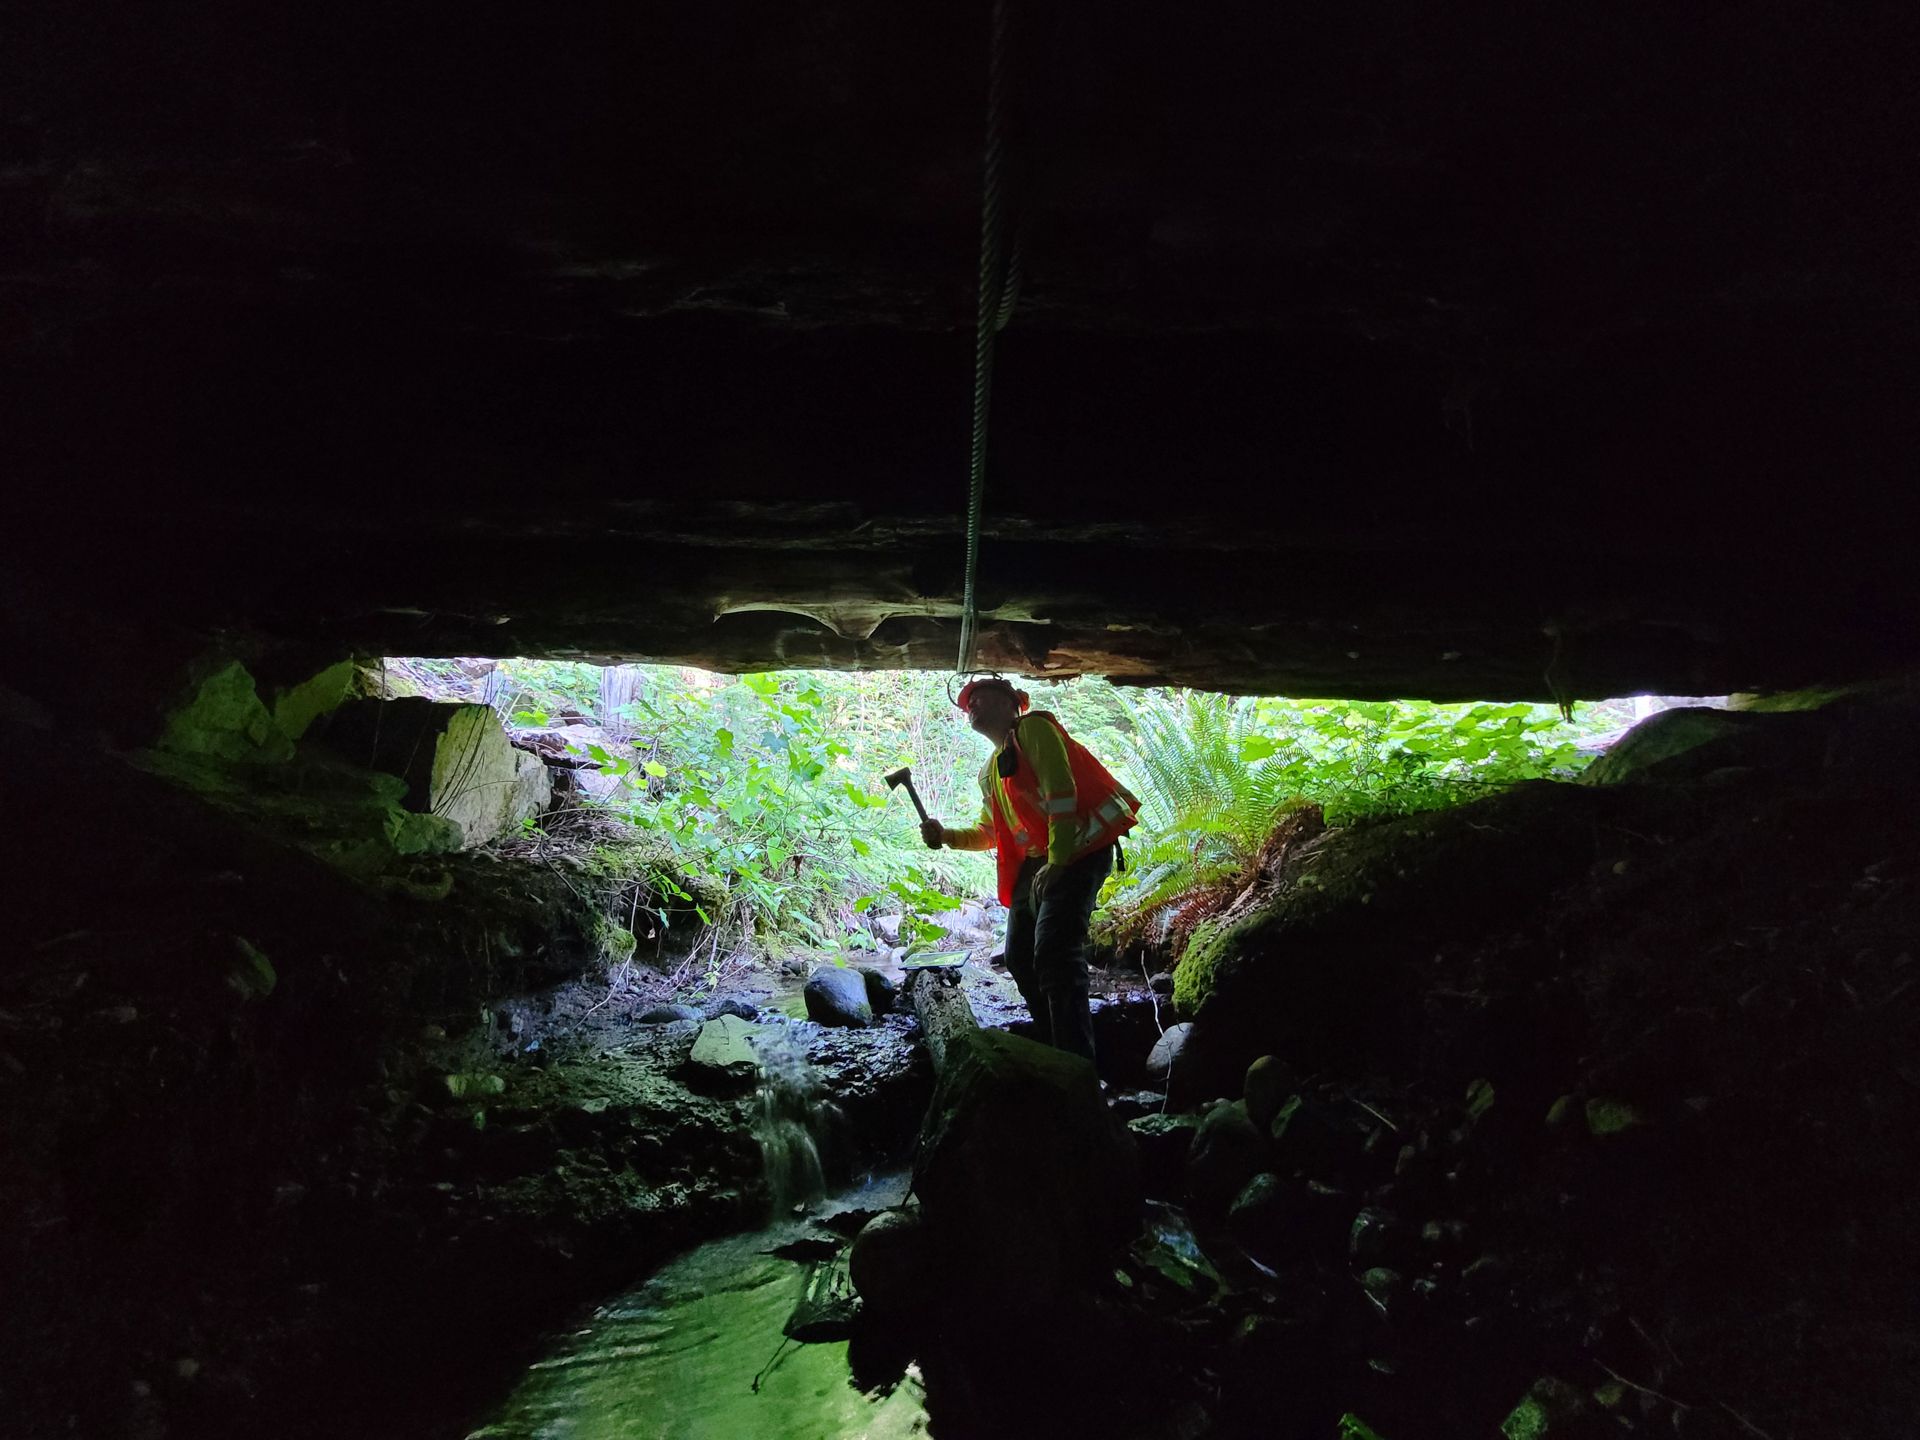 stonecroft team member surveying under bridge